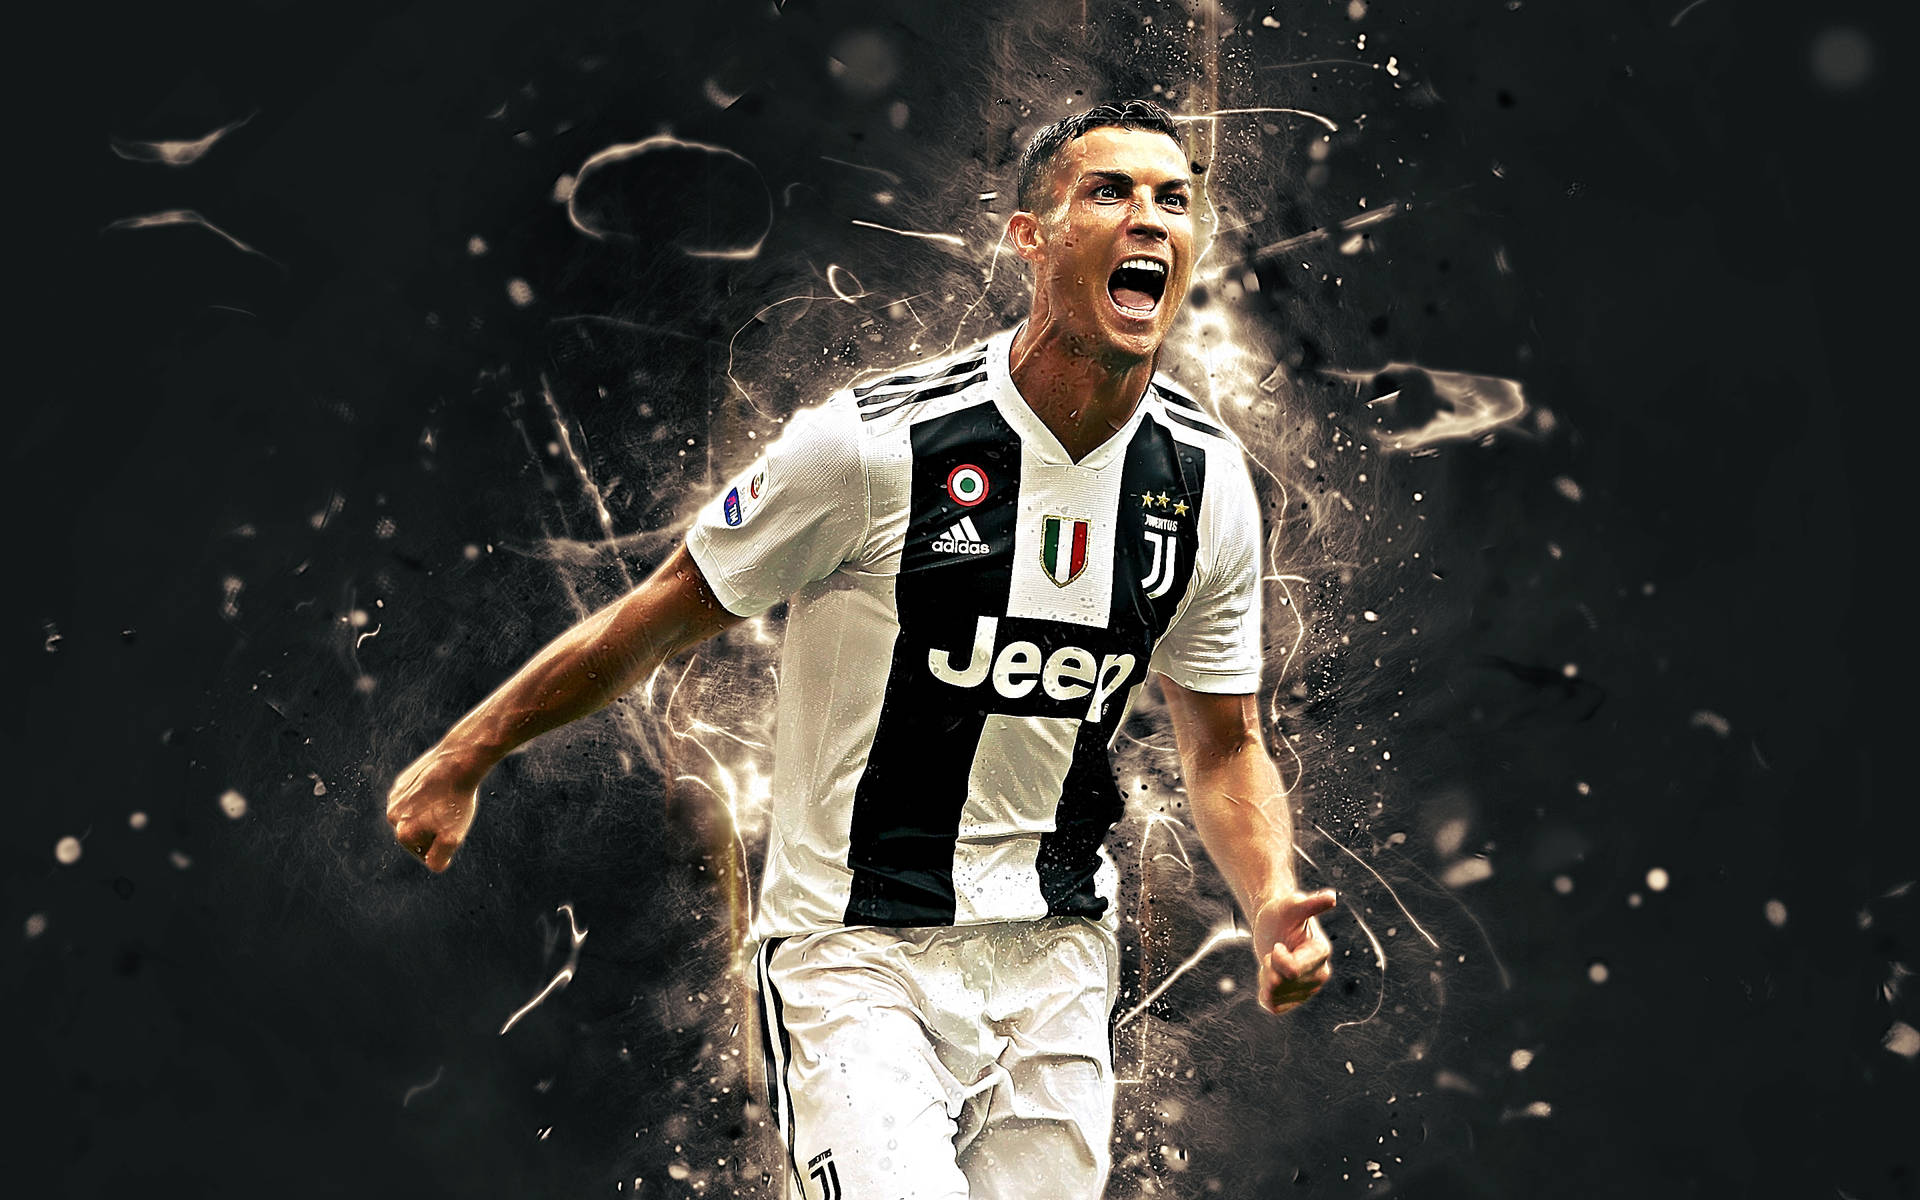 Shouting Cristiano Ronaldo Hd 4k Wallpaper